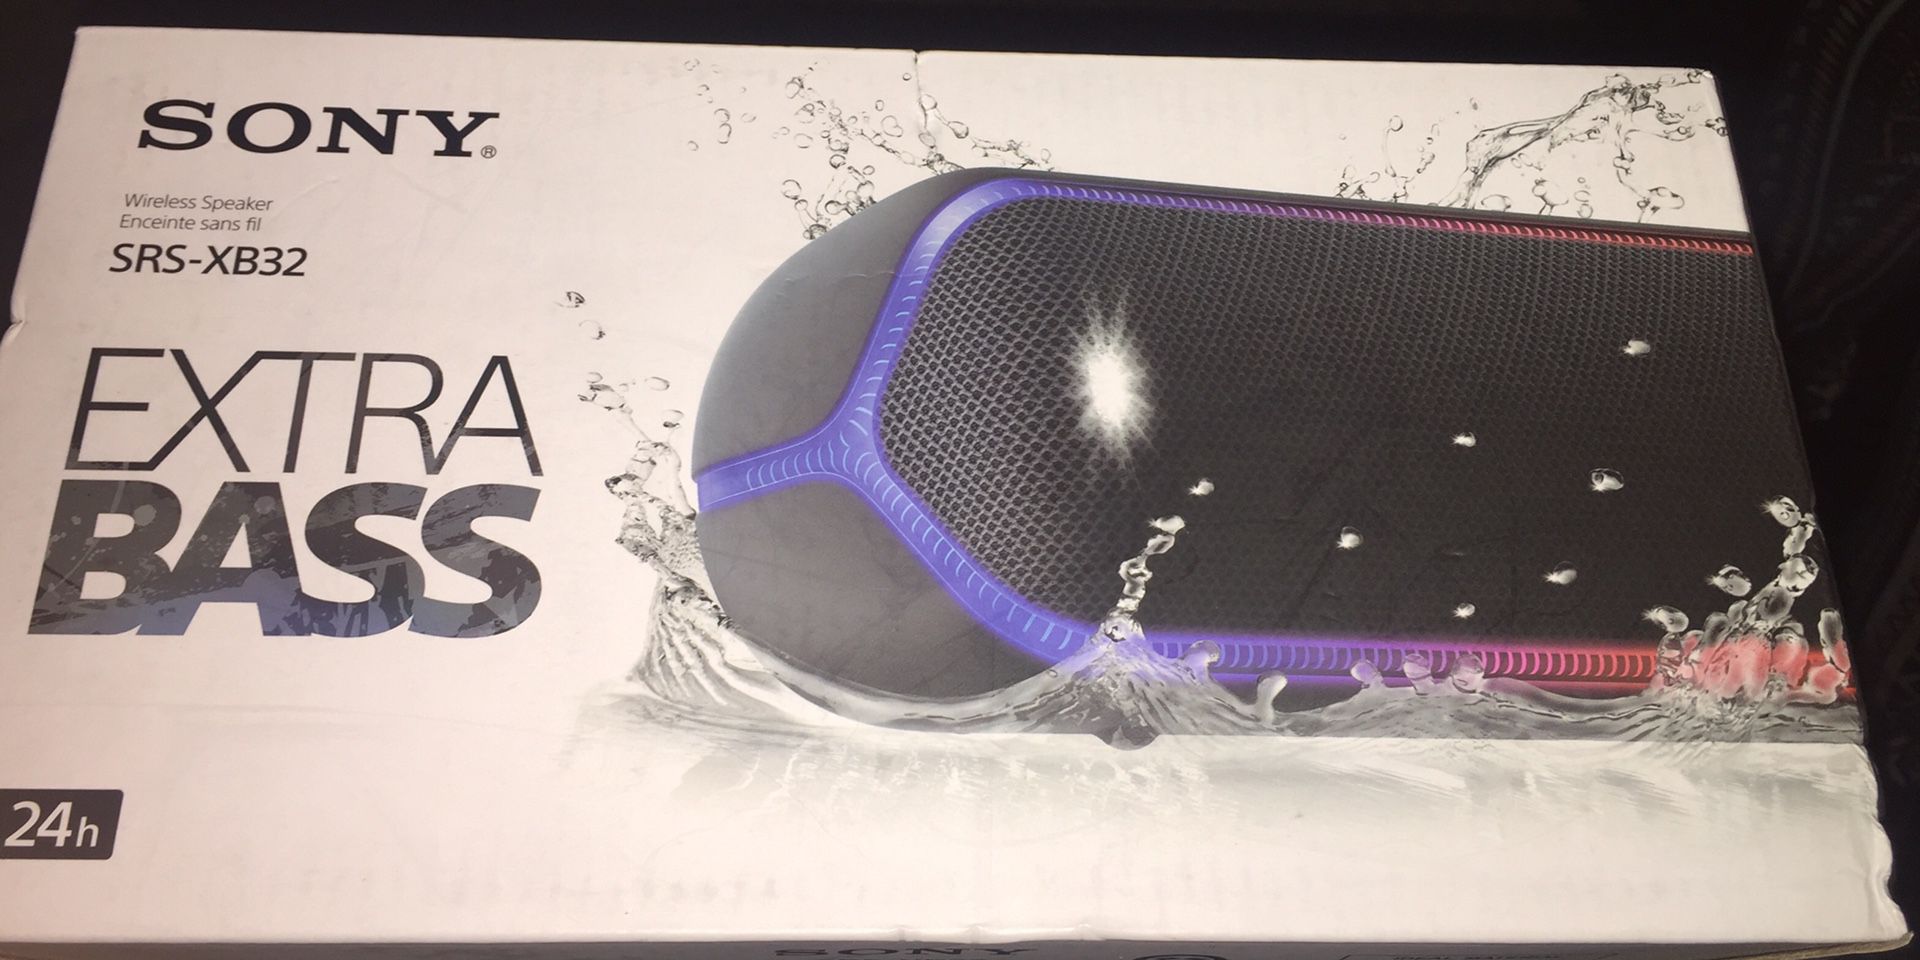 Sony SRS-XB32 Extra Bass Wireless Portable Bluetooth Speaker Waterproof